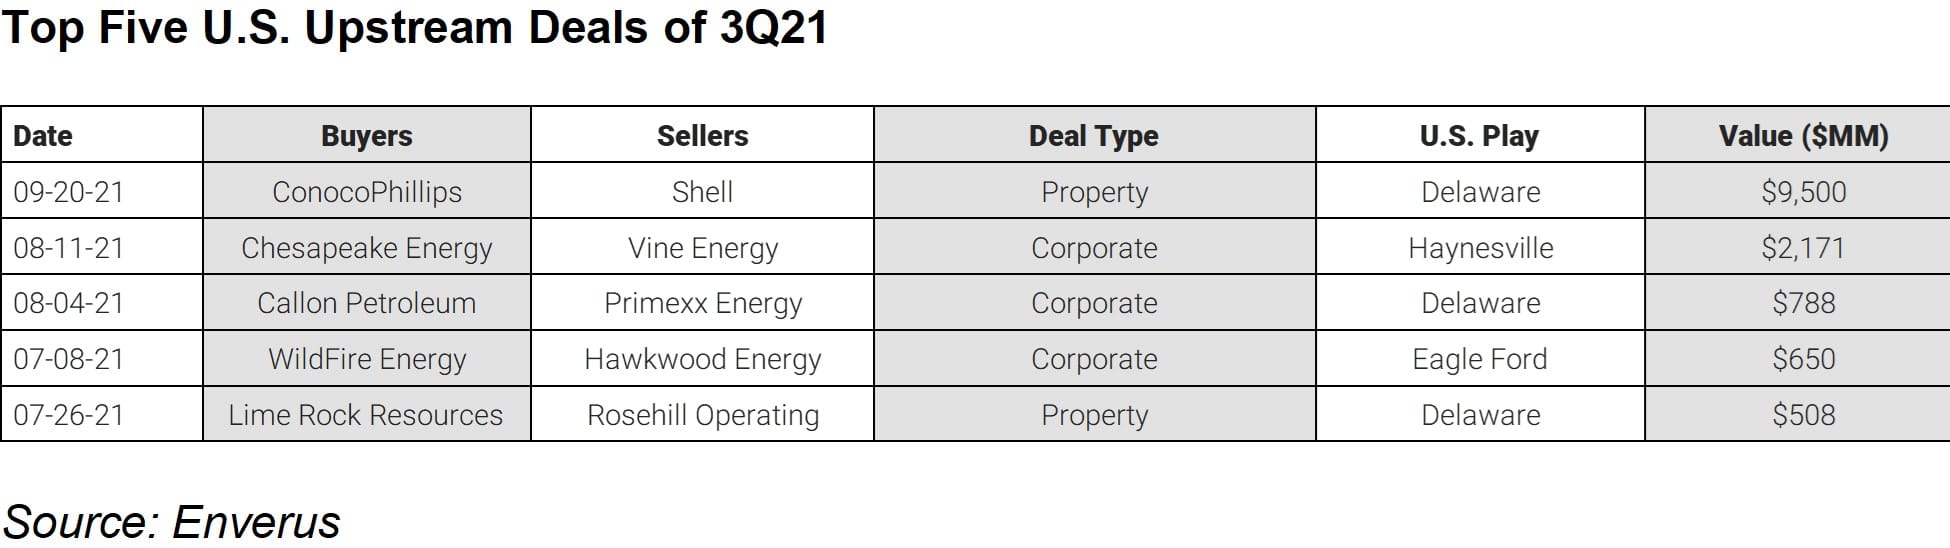 Top 5 US Upstream Deals of 3Q21